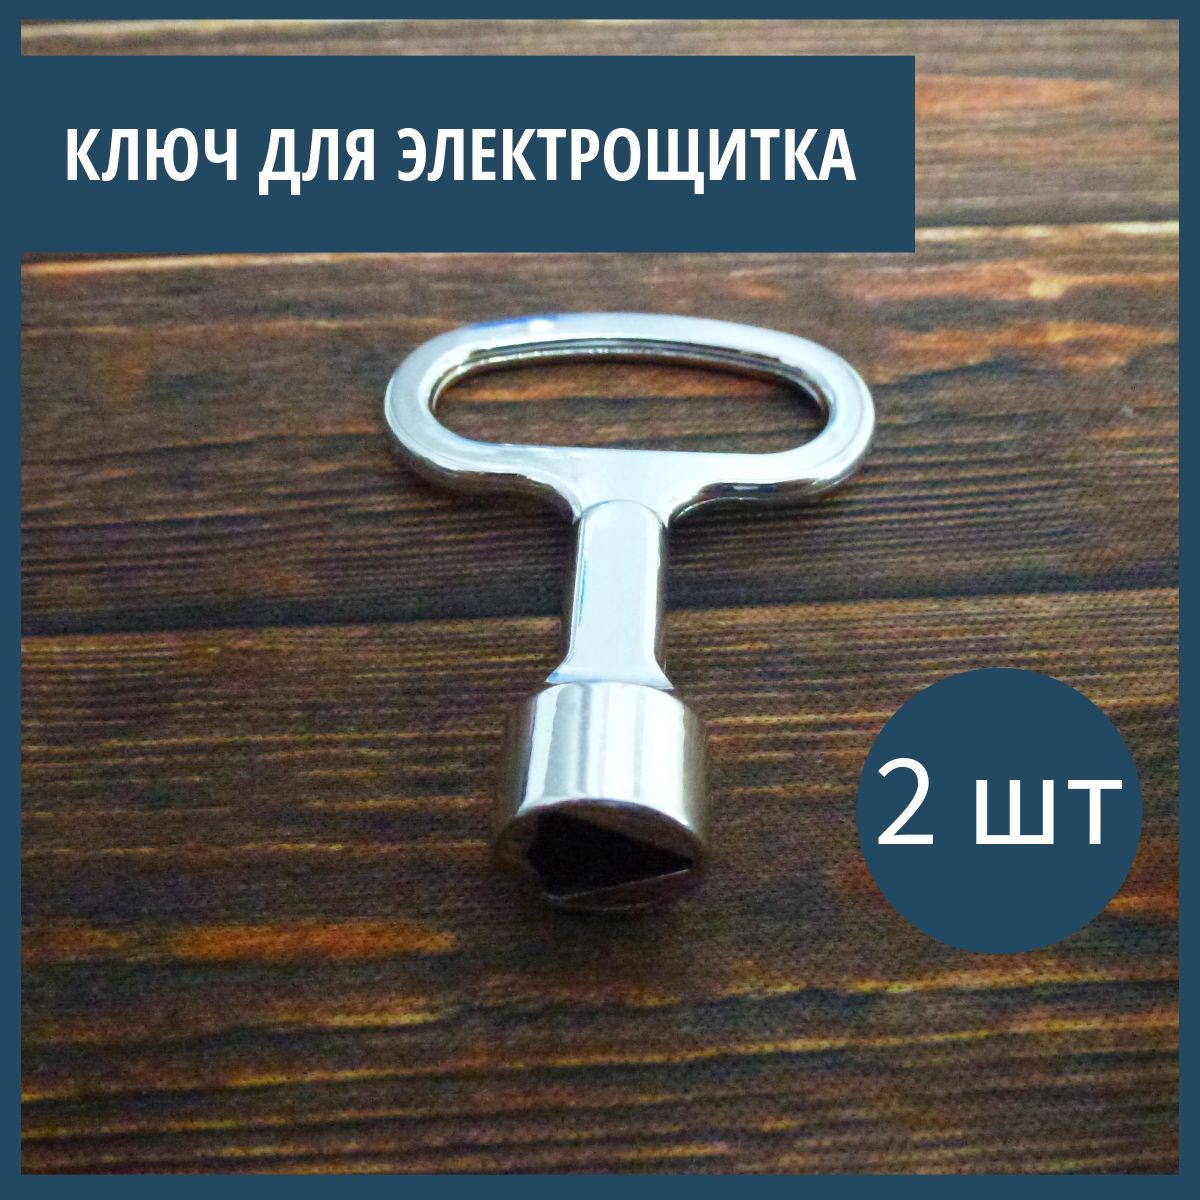 Ключтрехгранный-ключтреугольникдляэлектрощитковшкафчиковящиков2шт